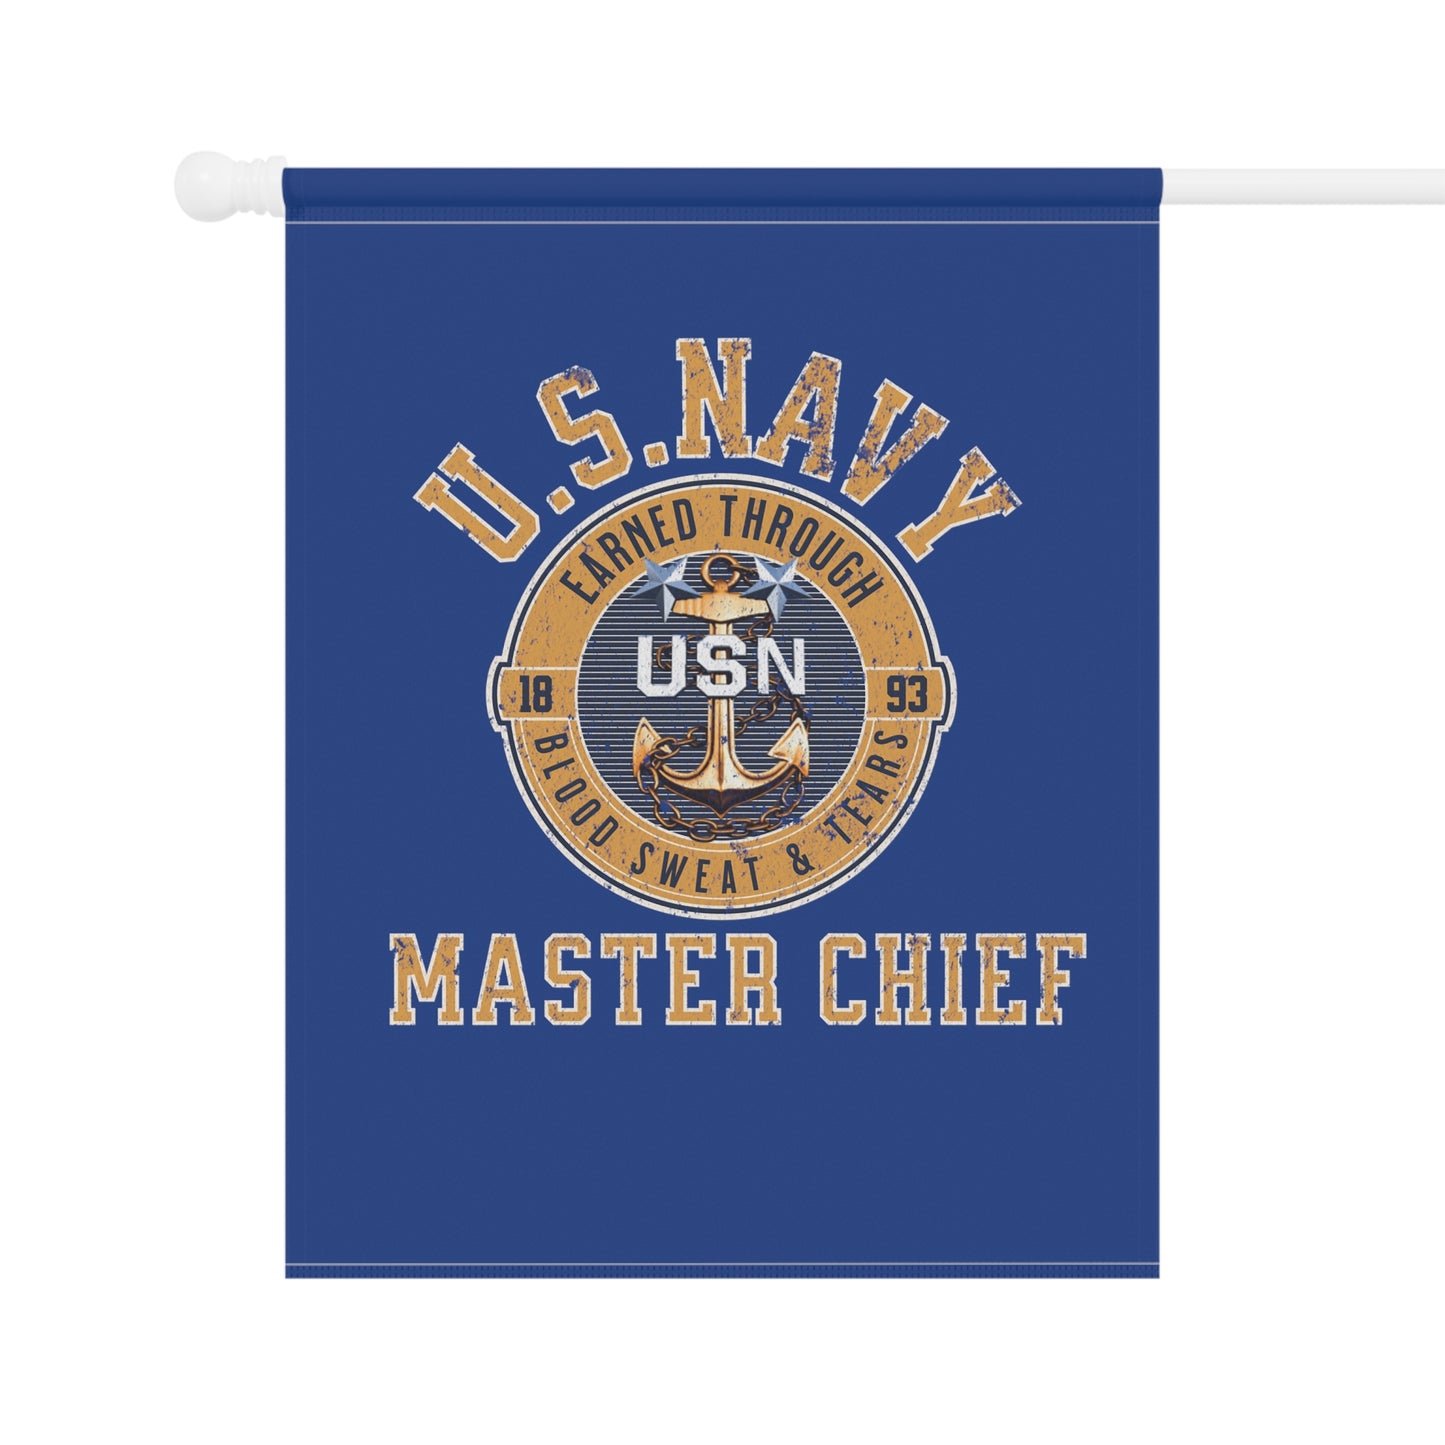 US Navy Master Chief Garden & House Banner